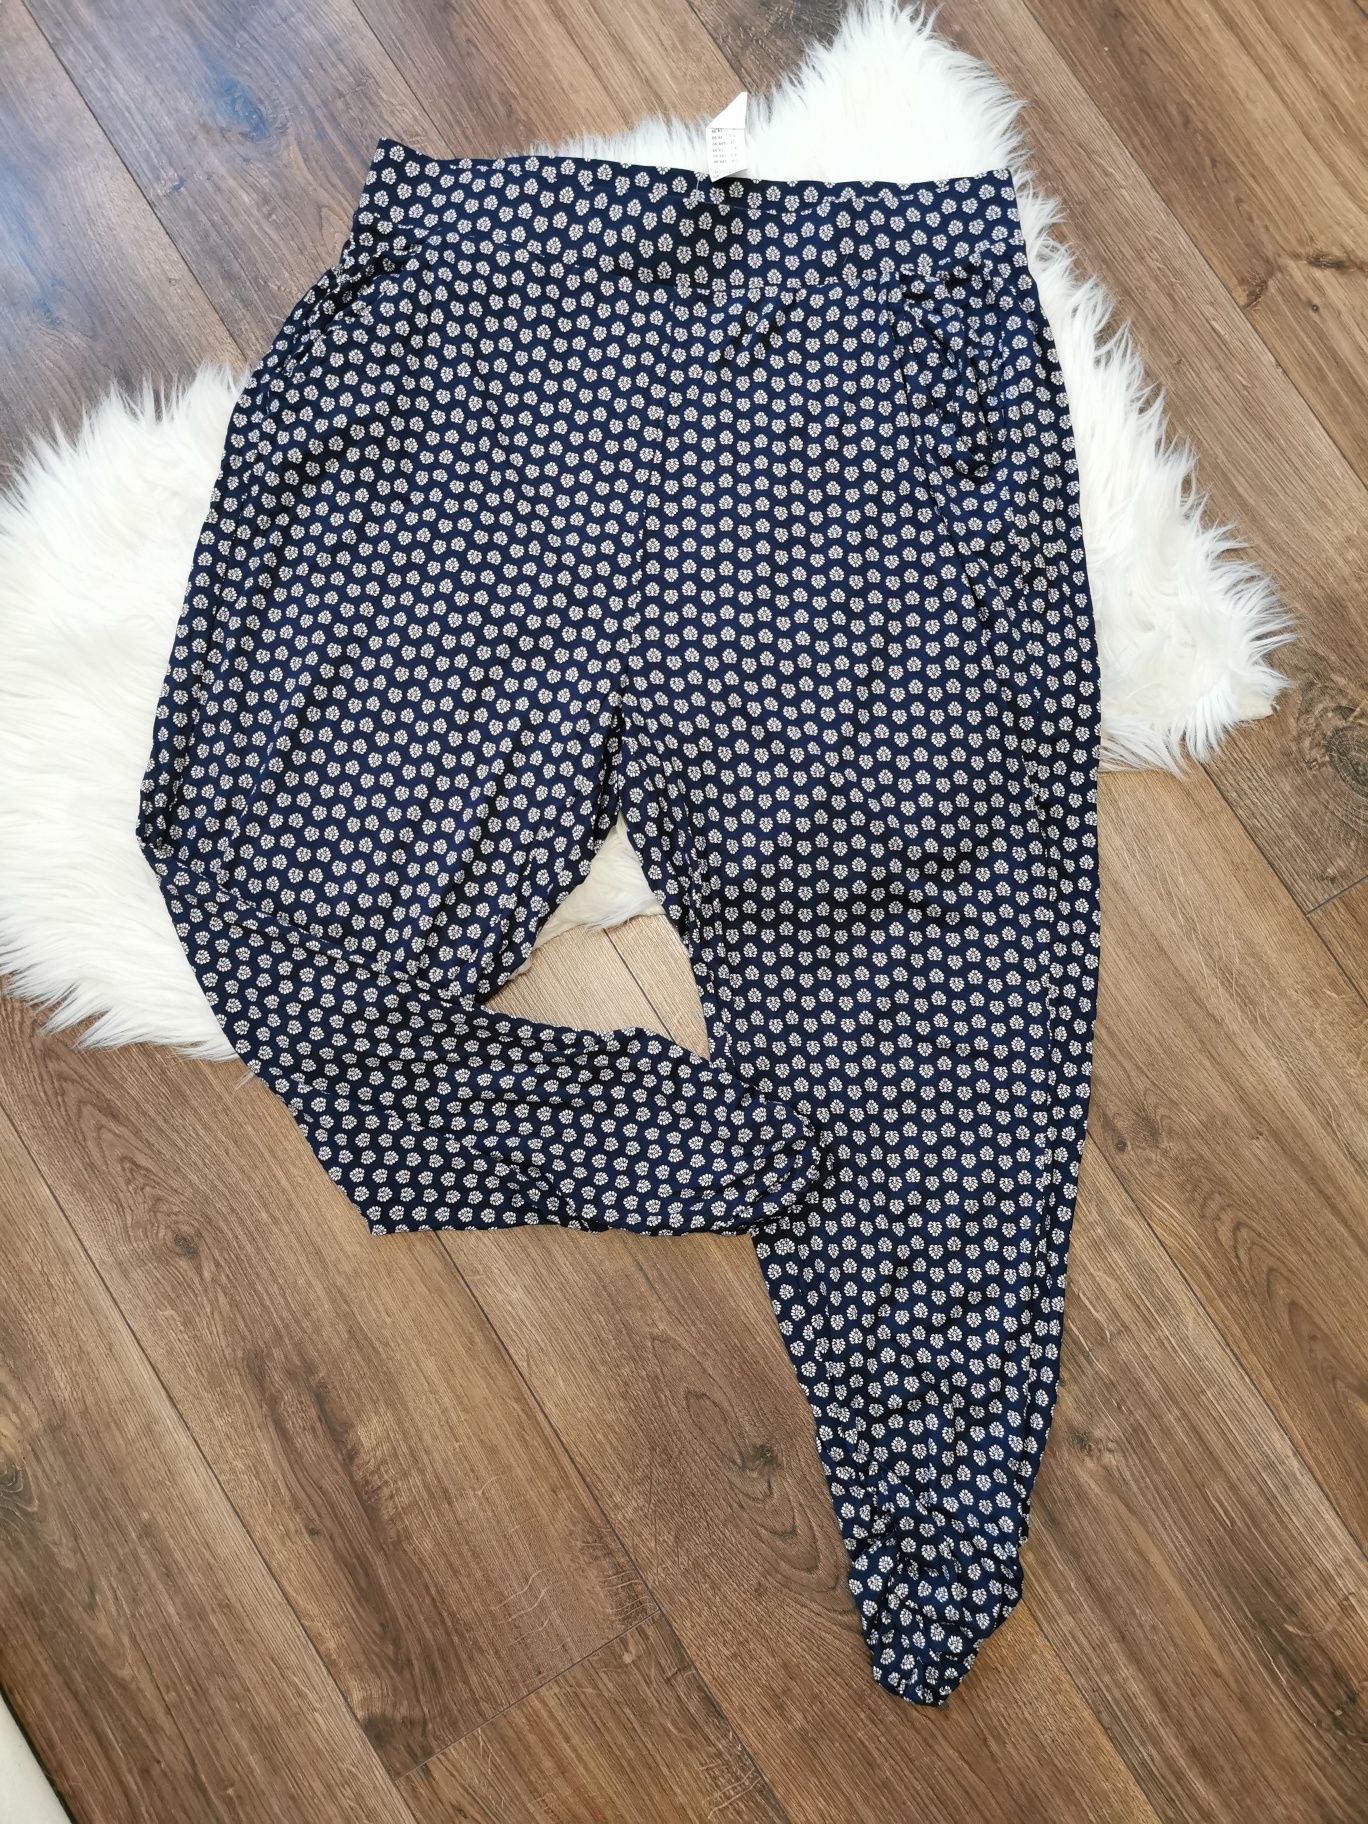 Spodnie haremki alladnynki dresowe damskie 44 XXL